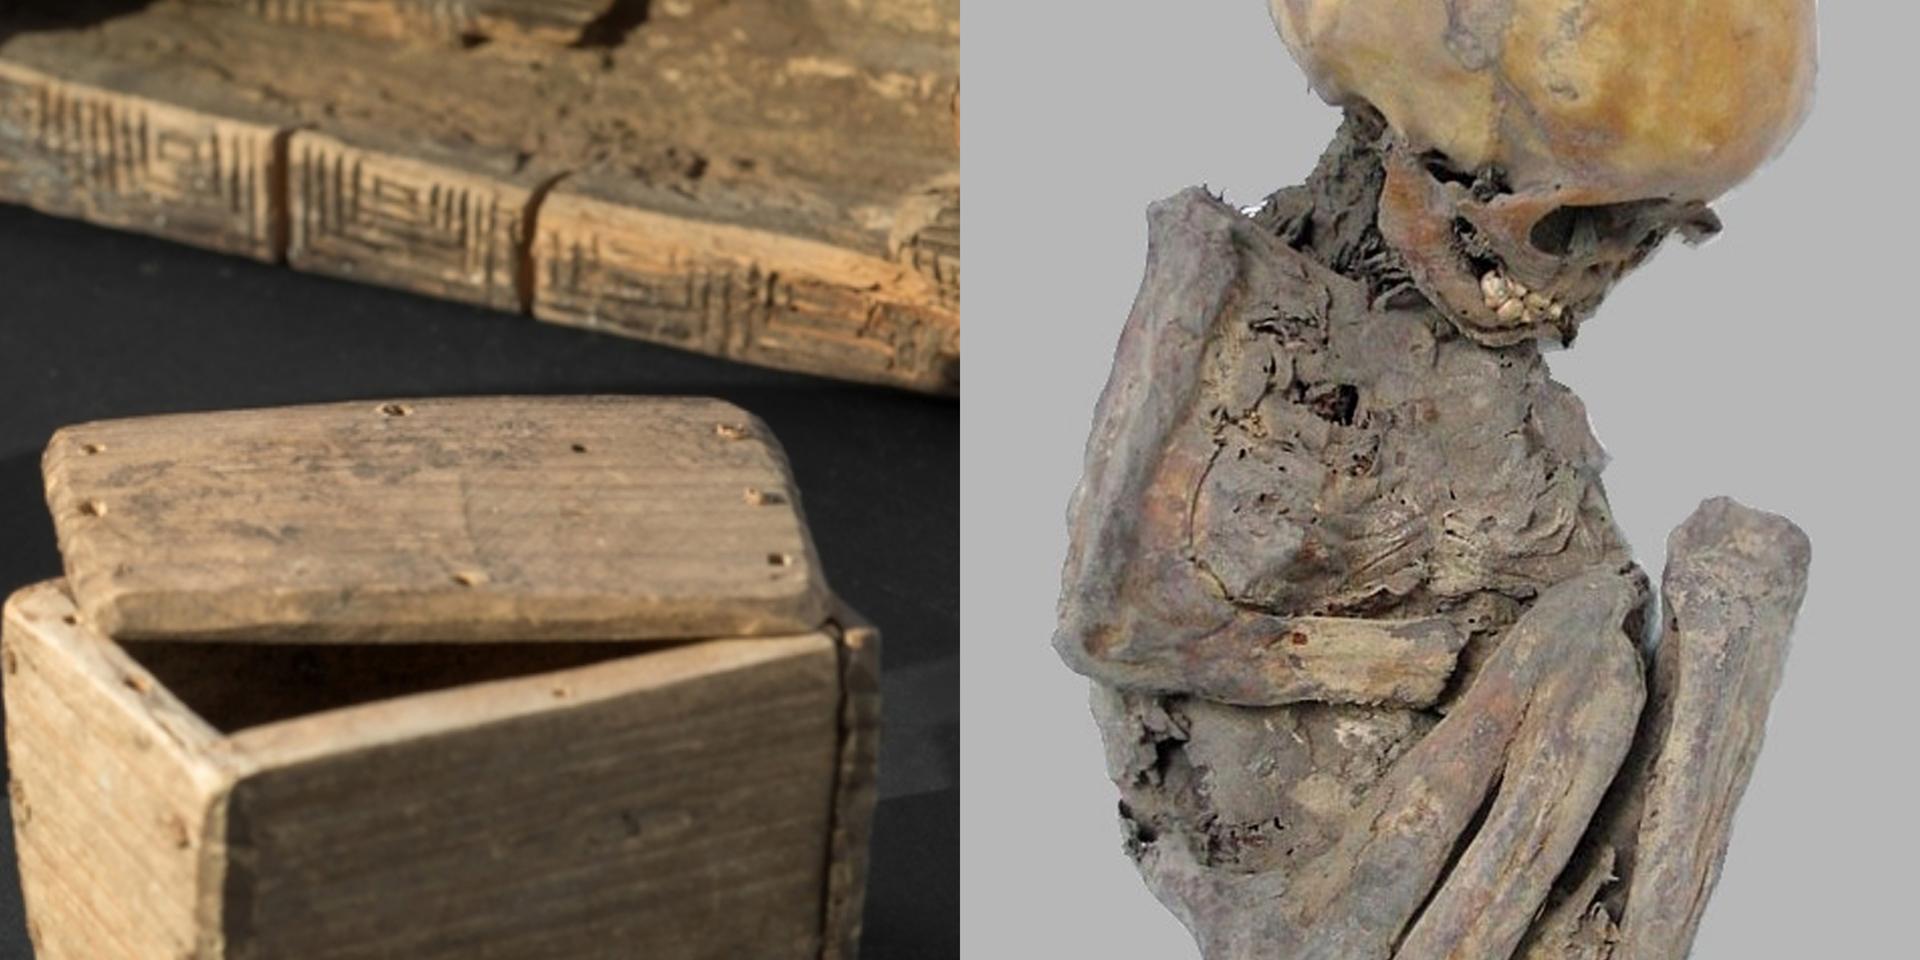 Bilden visar fosterkistor av de slag som hittats i exempelvis svenska kyrkomurar, samt ett mumifierat barnskelett. (Bilderna visar inte fyndet från Gällared, som nu åter ska begravas.) 